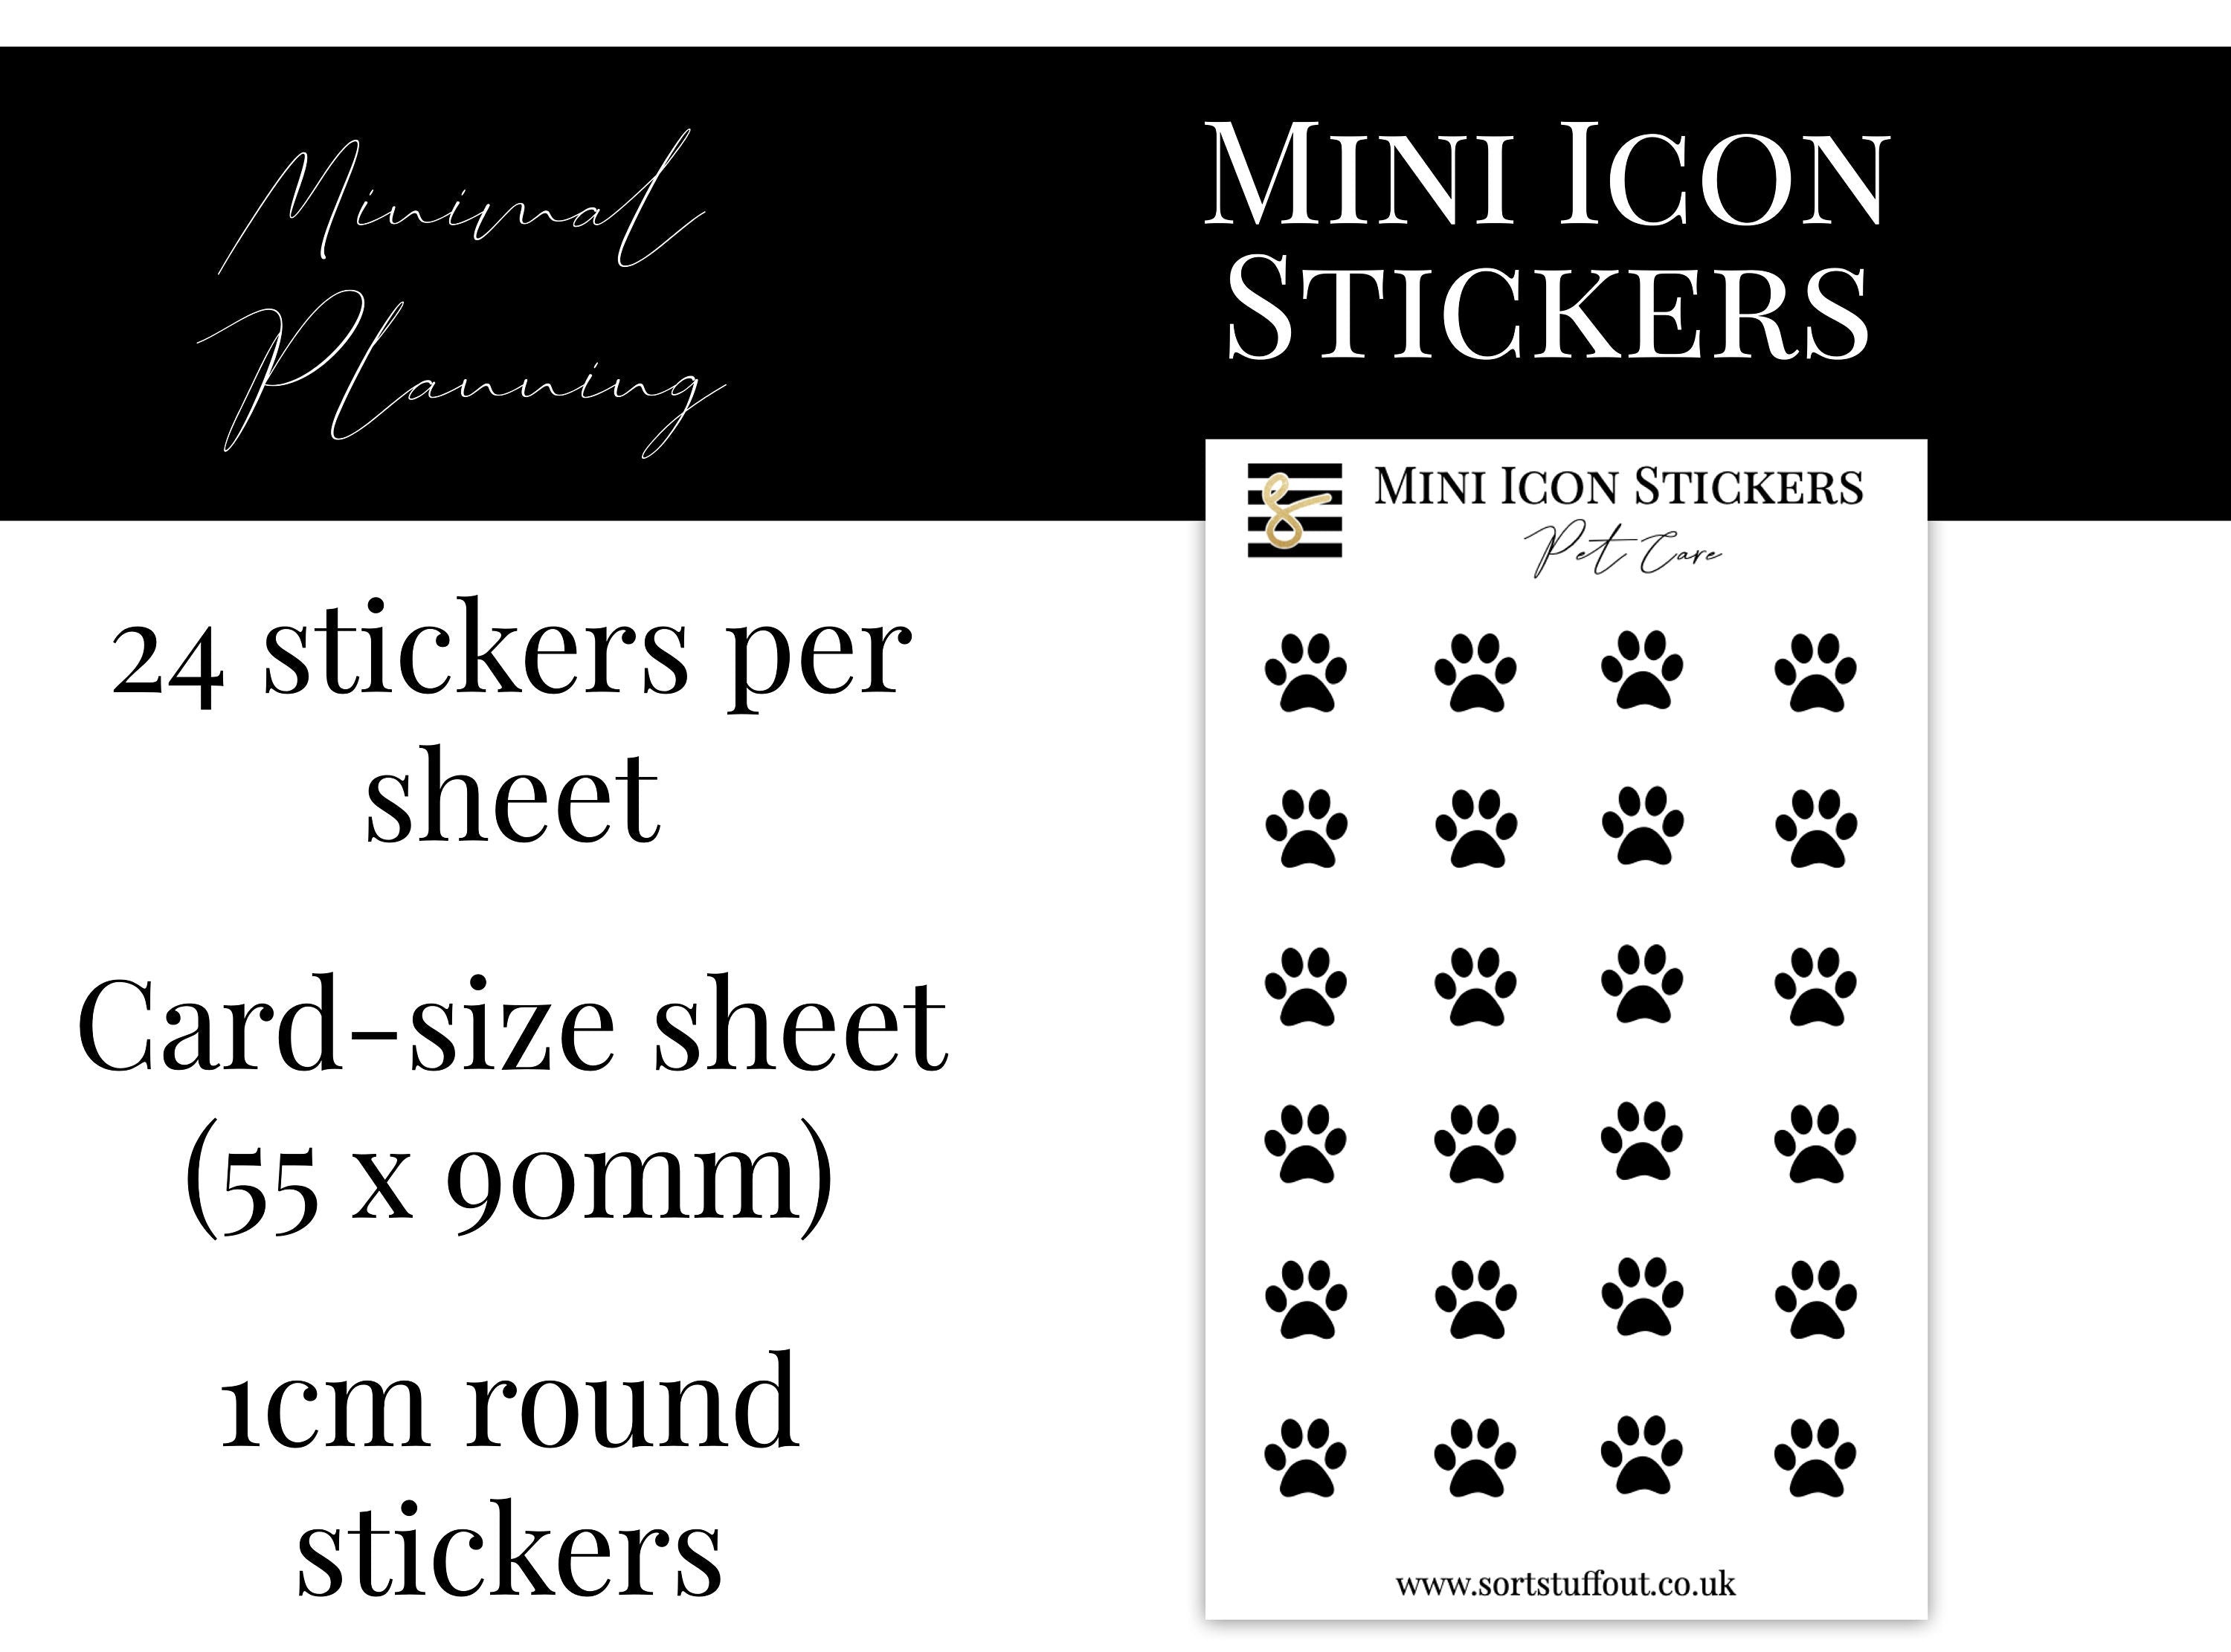 Mini Icon Stickers - Pet Care